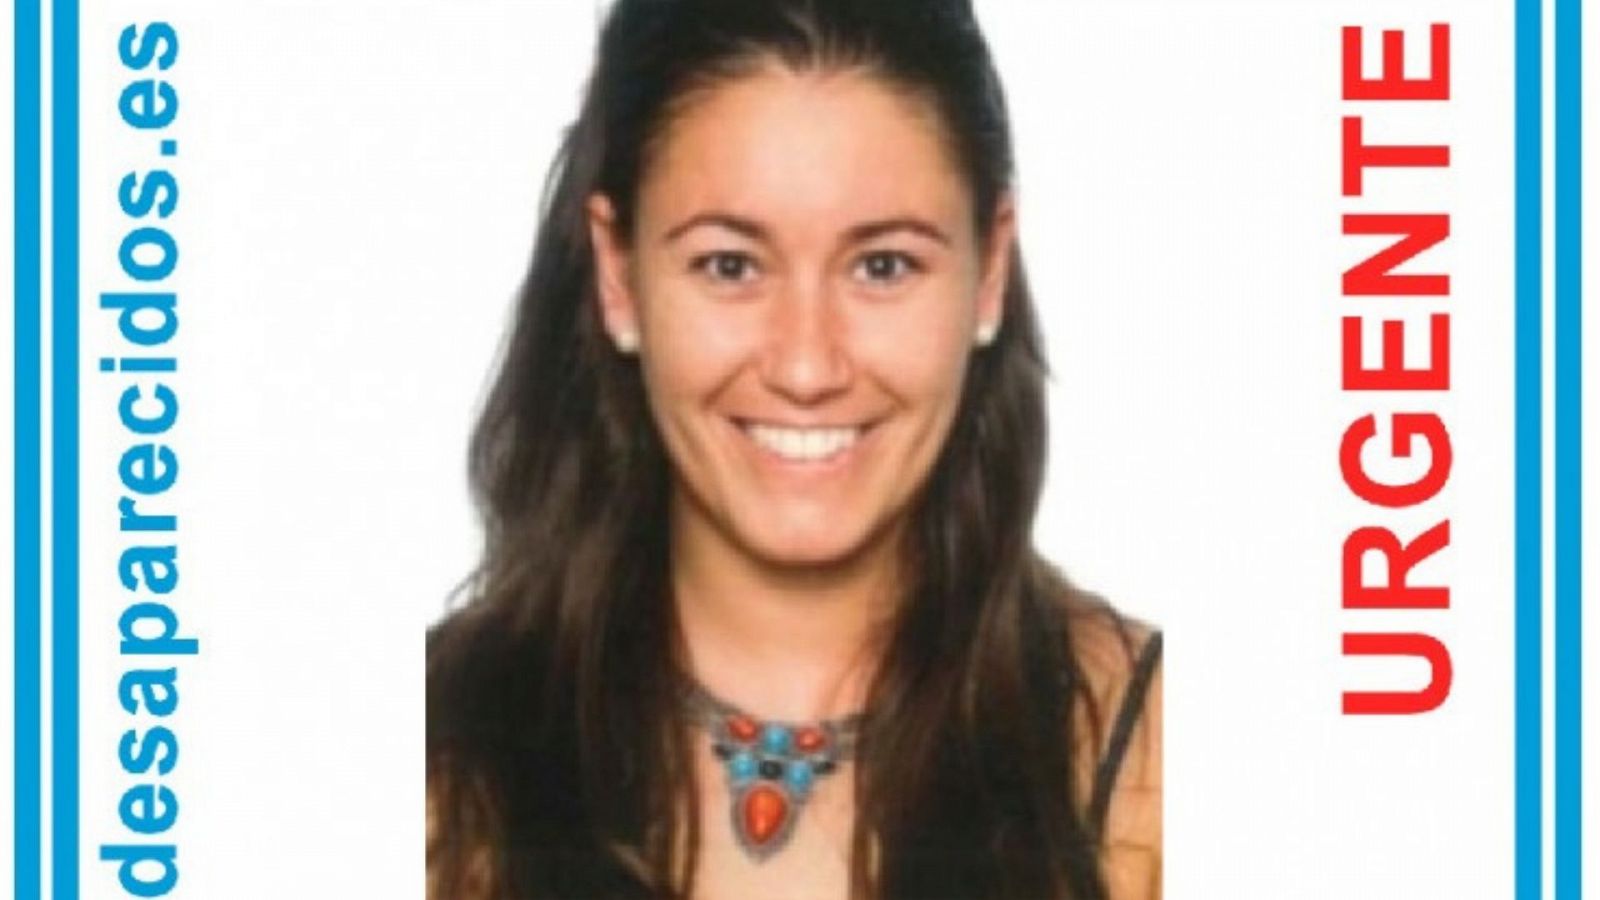 Continúa la búsqueda de Esther López, la mujer de 35 años desaparecida en Traspinedo,Valladolid - Ver ahora